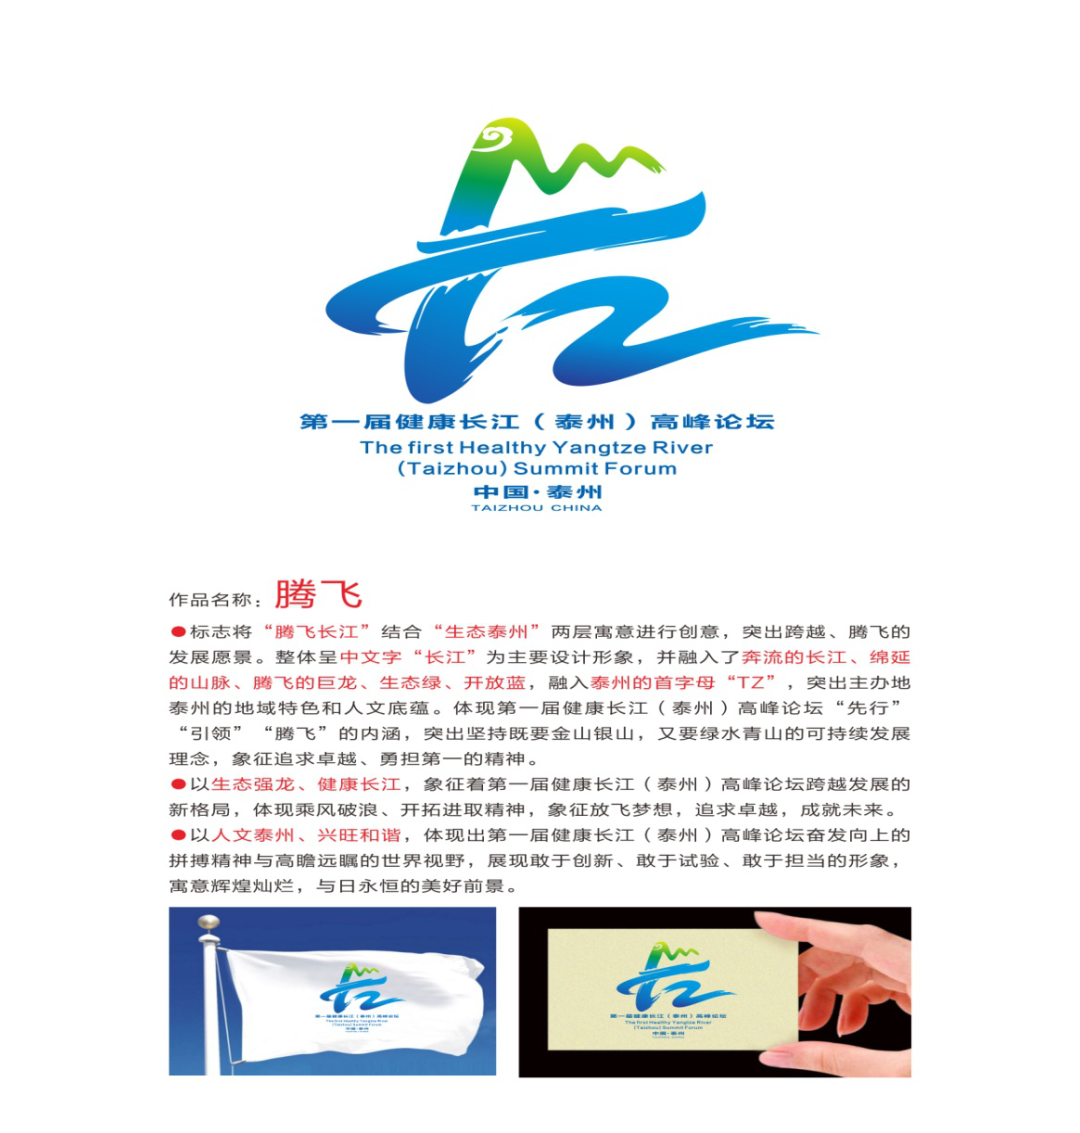 第一届健康长江泰州高峰论坛主题标志设计方案logo评选结果公告